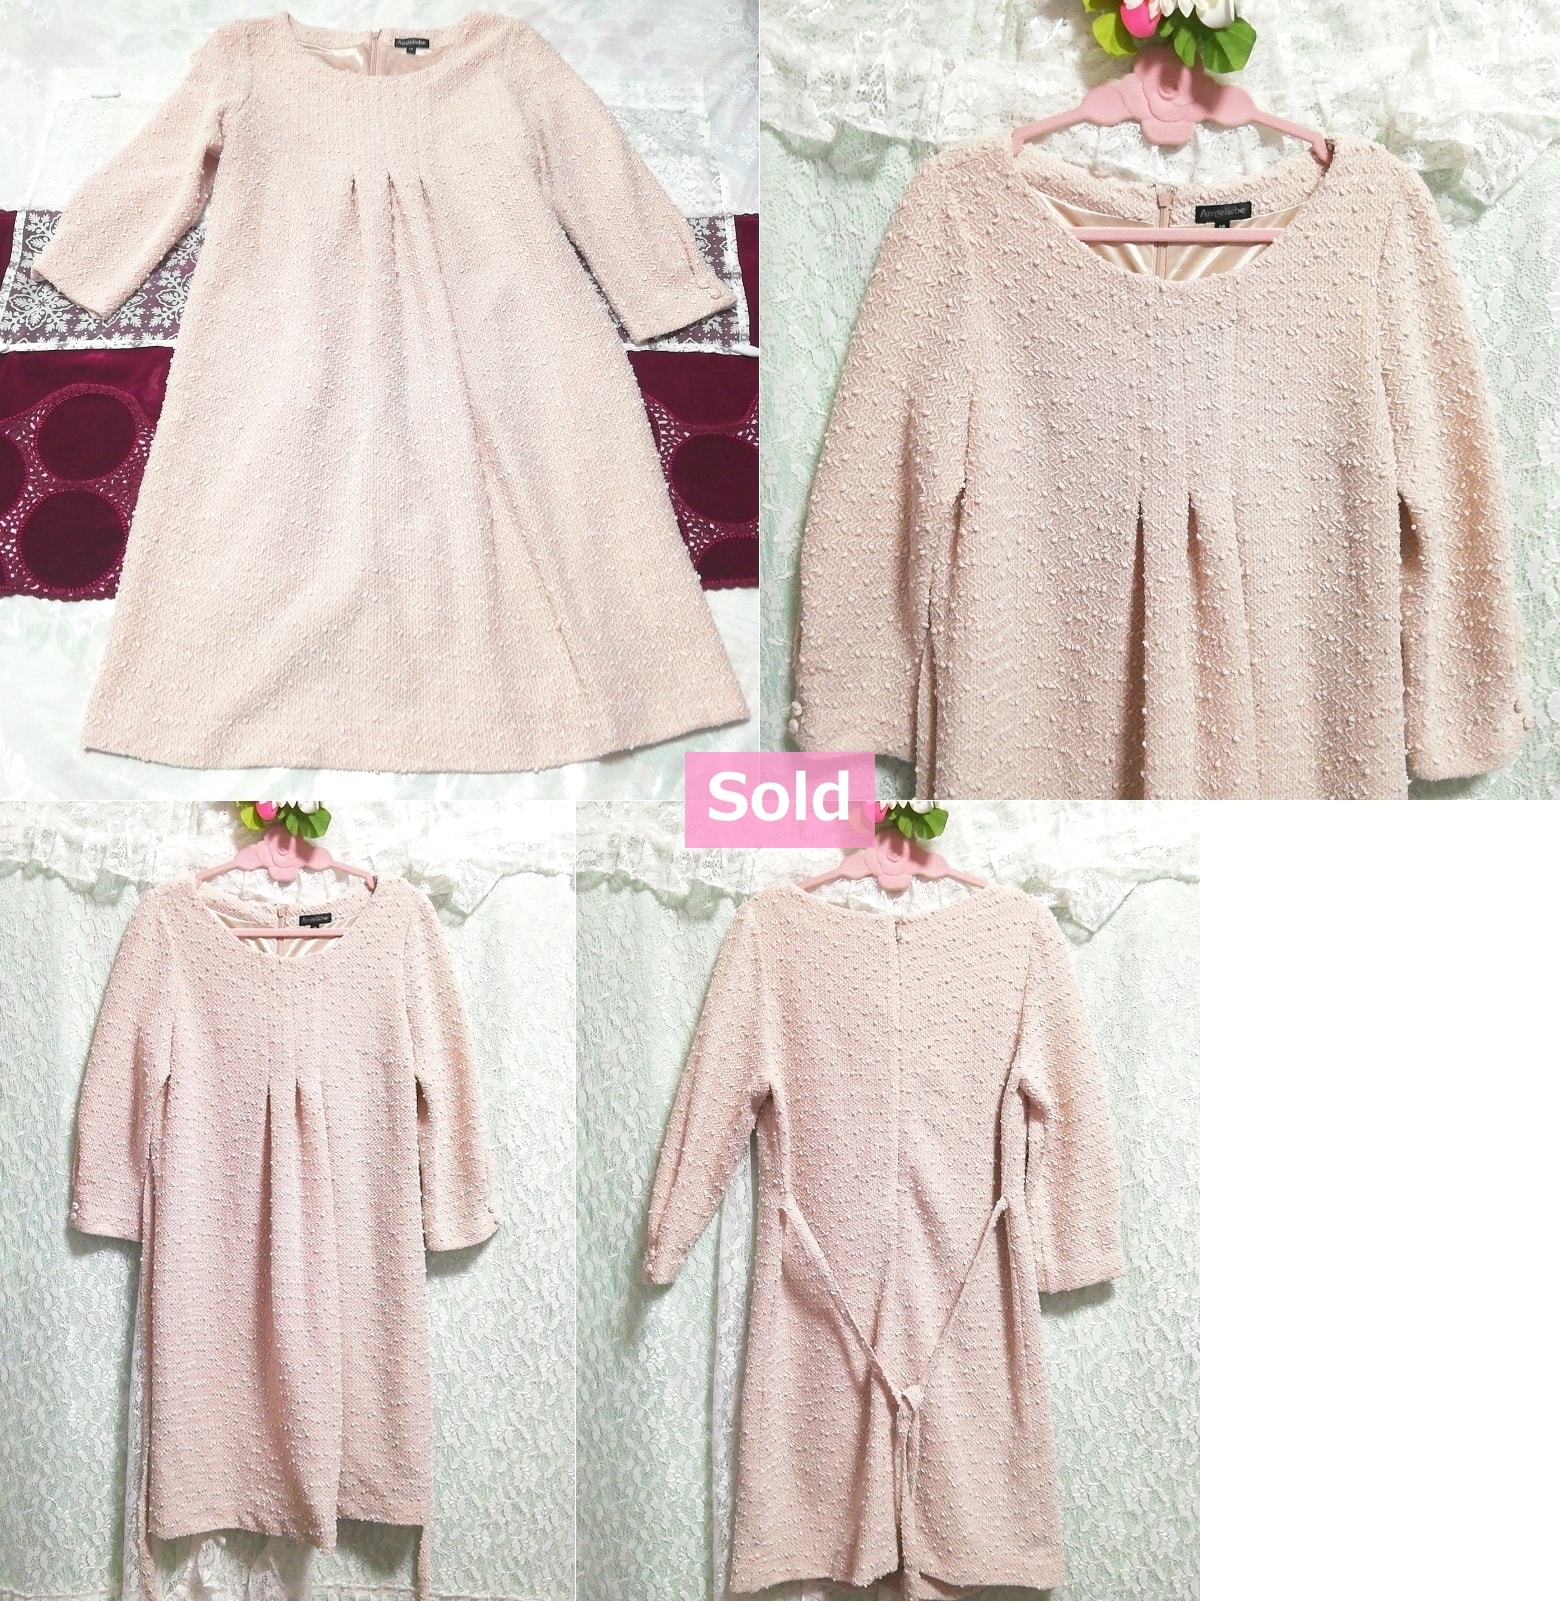 pink knit tunic negligee nightgown dress, tunic, long sleeve, m size